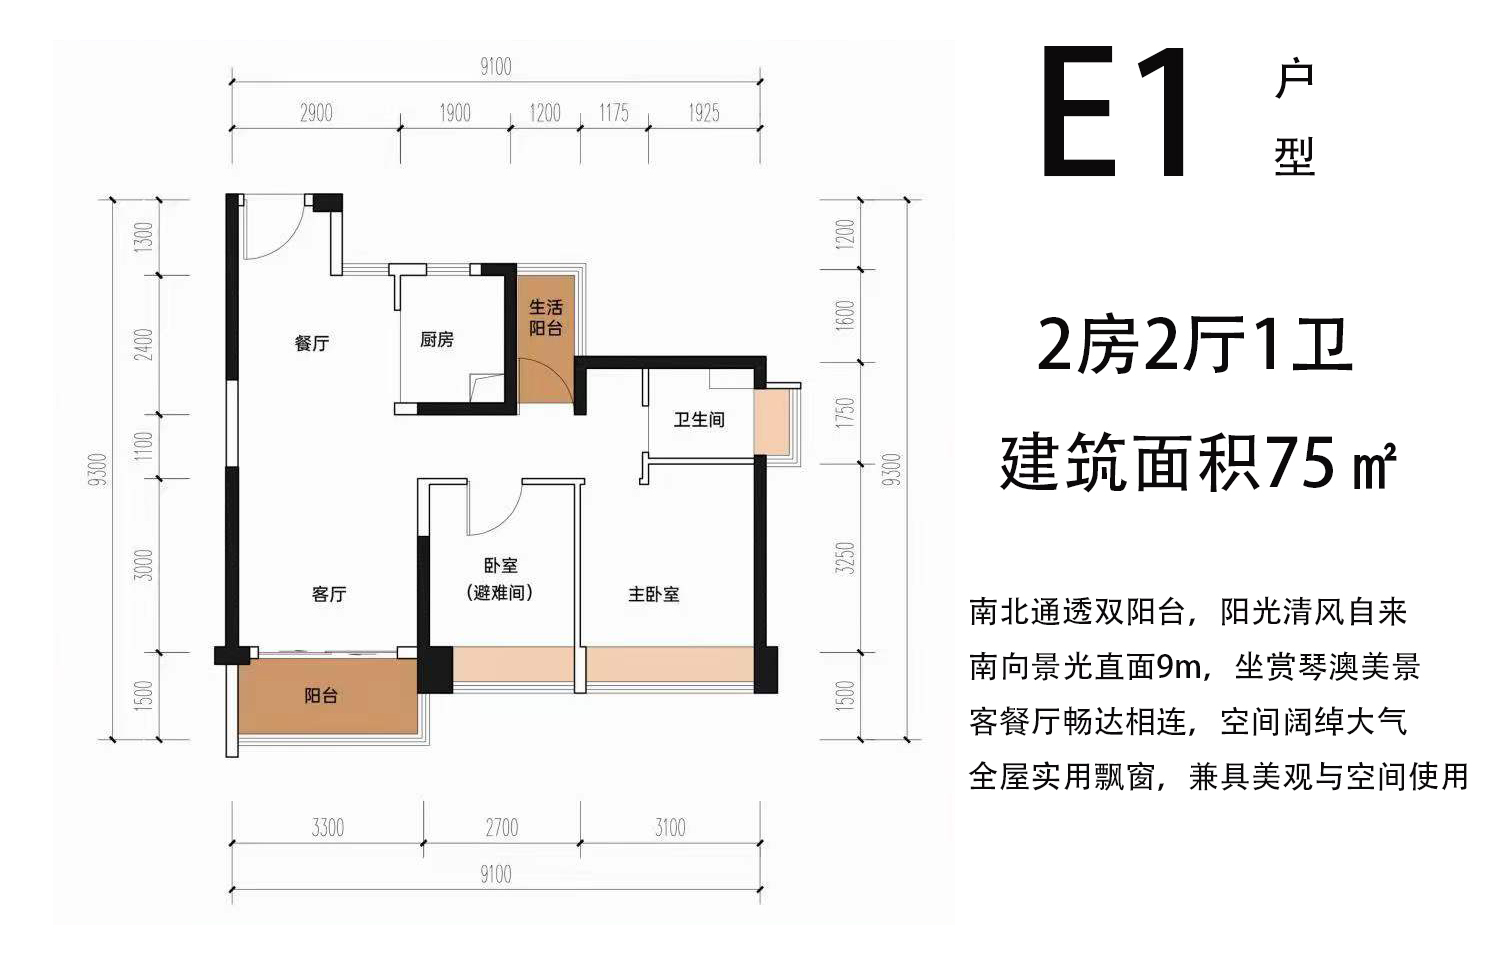 高层 E1户型 2房2厅1卫 建筑面积75㎡